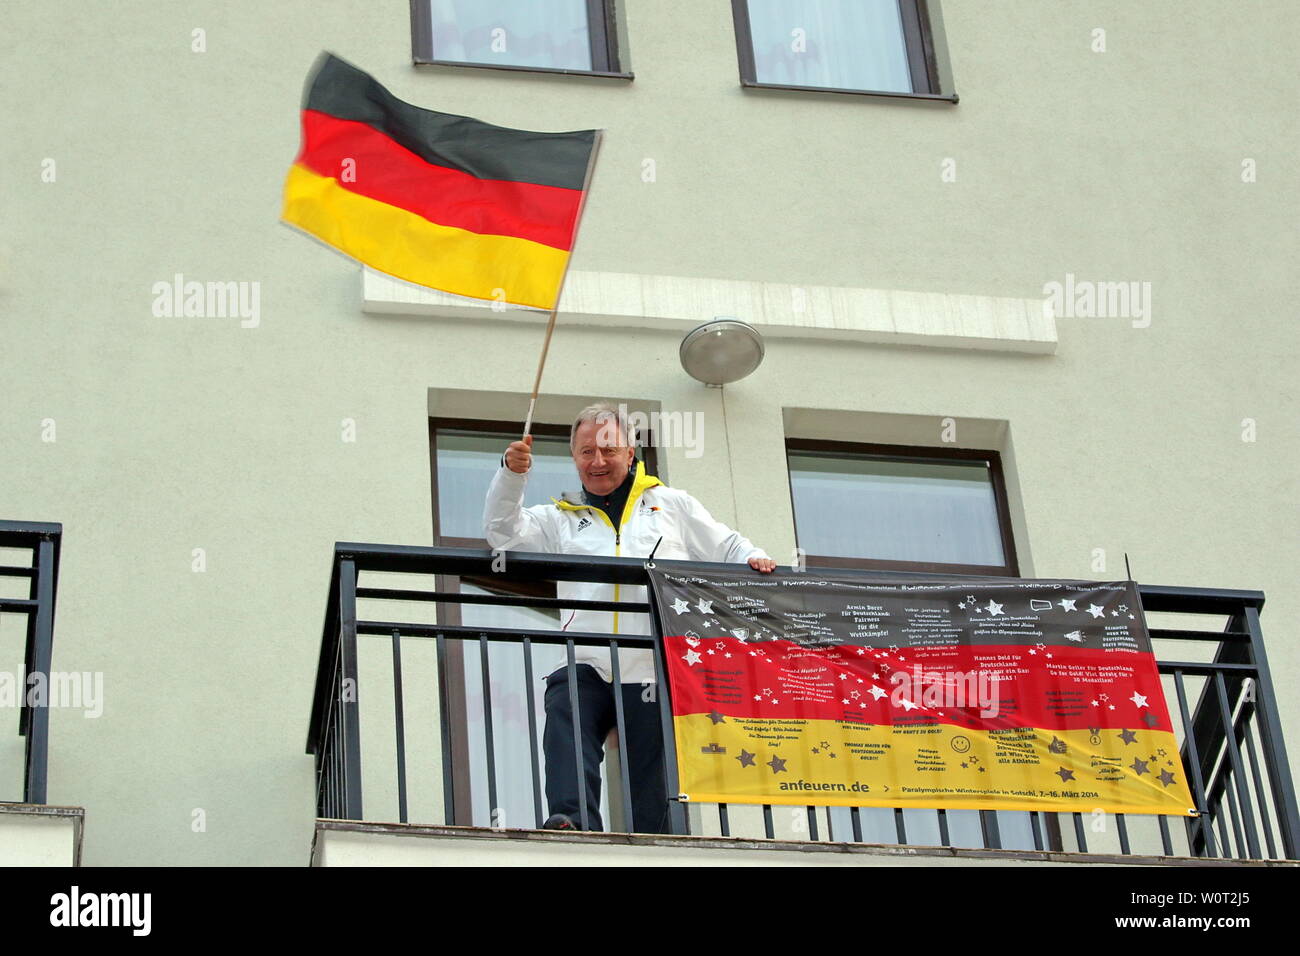 DBS-Präsident Friedhelm Julius BEUCHER hat gut jubeln in diesen Tagen und grüßt mit der deutschen Flagge vom Balkon seines Hotelzimmers in Rosa Khutor - Siegerehrung Rosa Khutor Ski Alpin 6. Tag Paralympics Sotschi  Paralympics Sotschi 2014 / Paralympic Winter Games Sochi 2014 Stock Photo